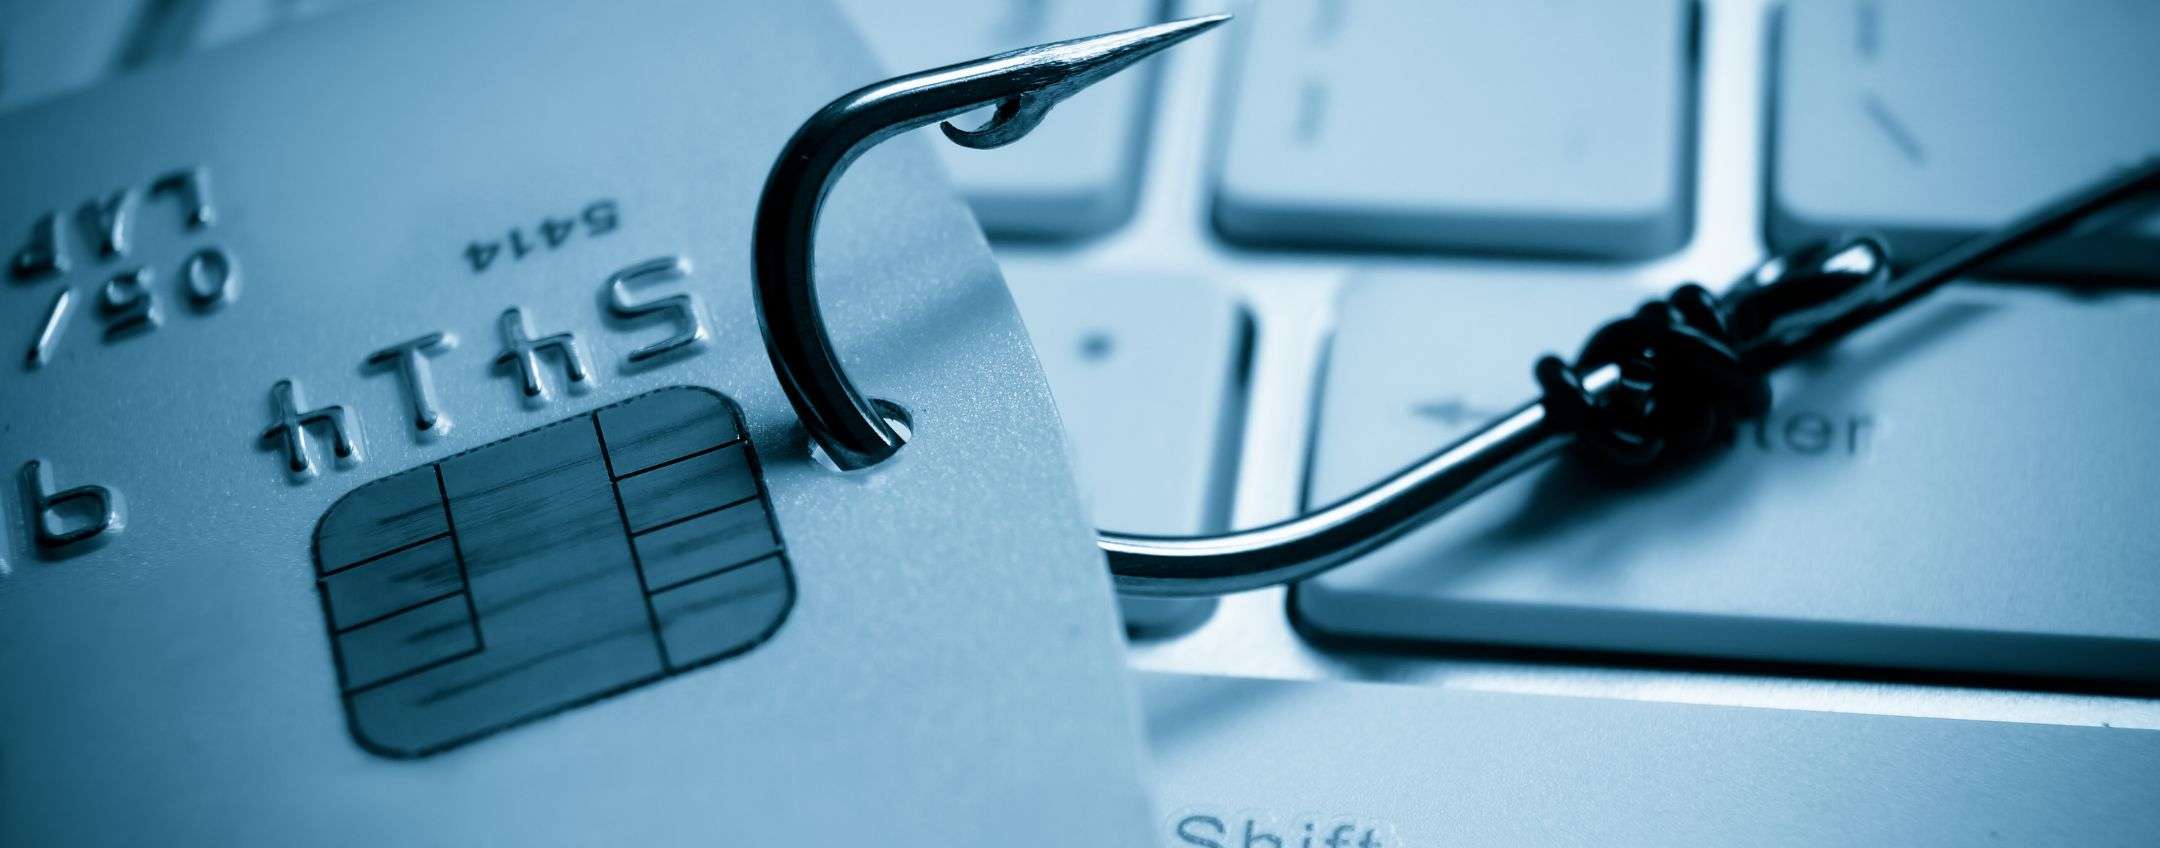 Proteggersi dagli attacchi phishing: perché usare un buon antivirus